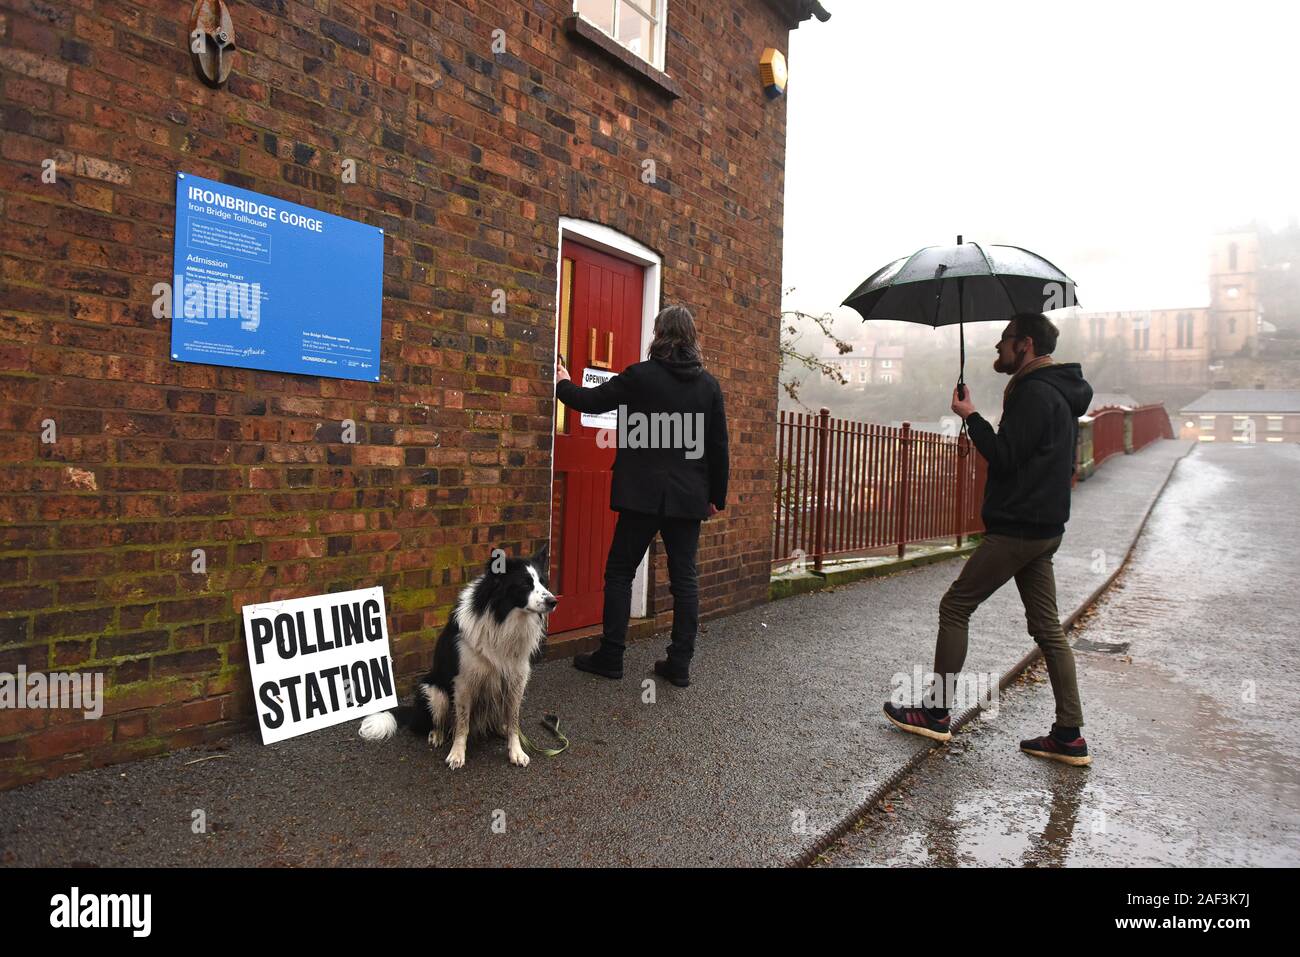 Les électeurs bravent le temps humide, froid et maltraité pour voter aux élections générales à l'historique Iron Bridge Tollhouse alors qu'un chien d'électeurs attend sous la pluie. Crédit: David Bagnall/Alay Live News Banque D'Images